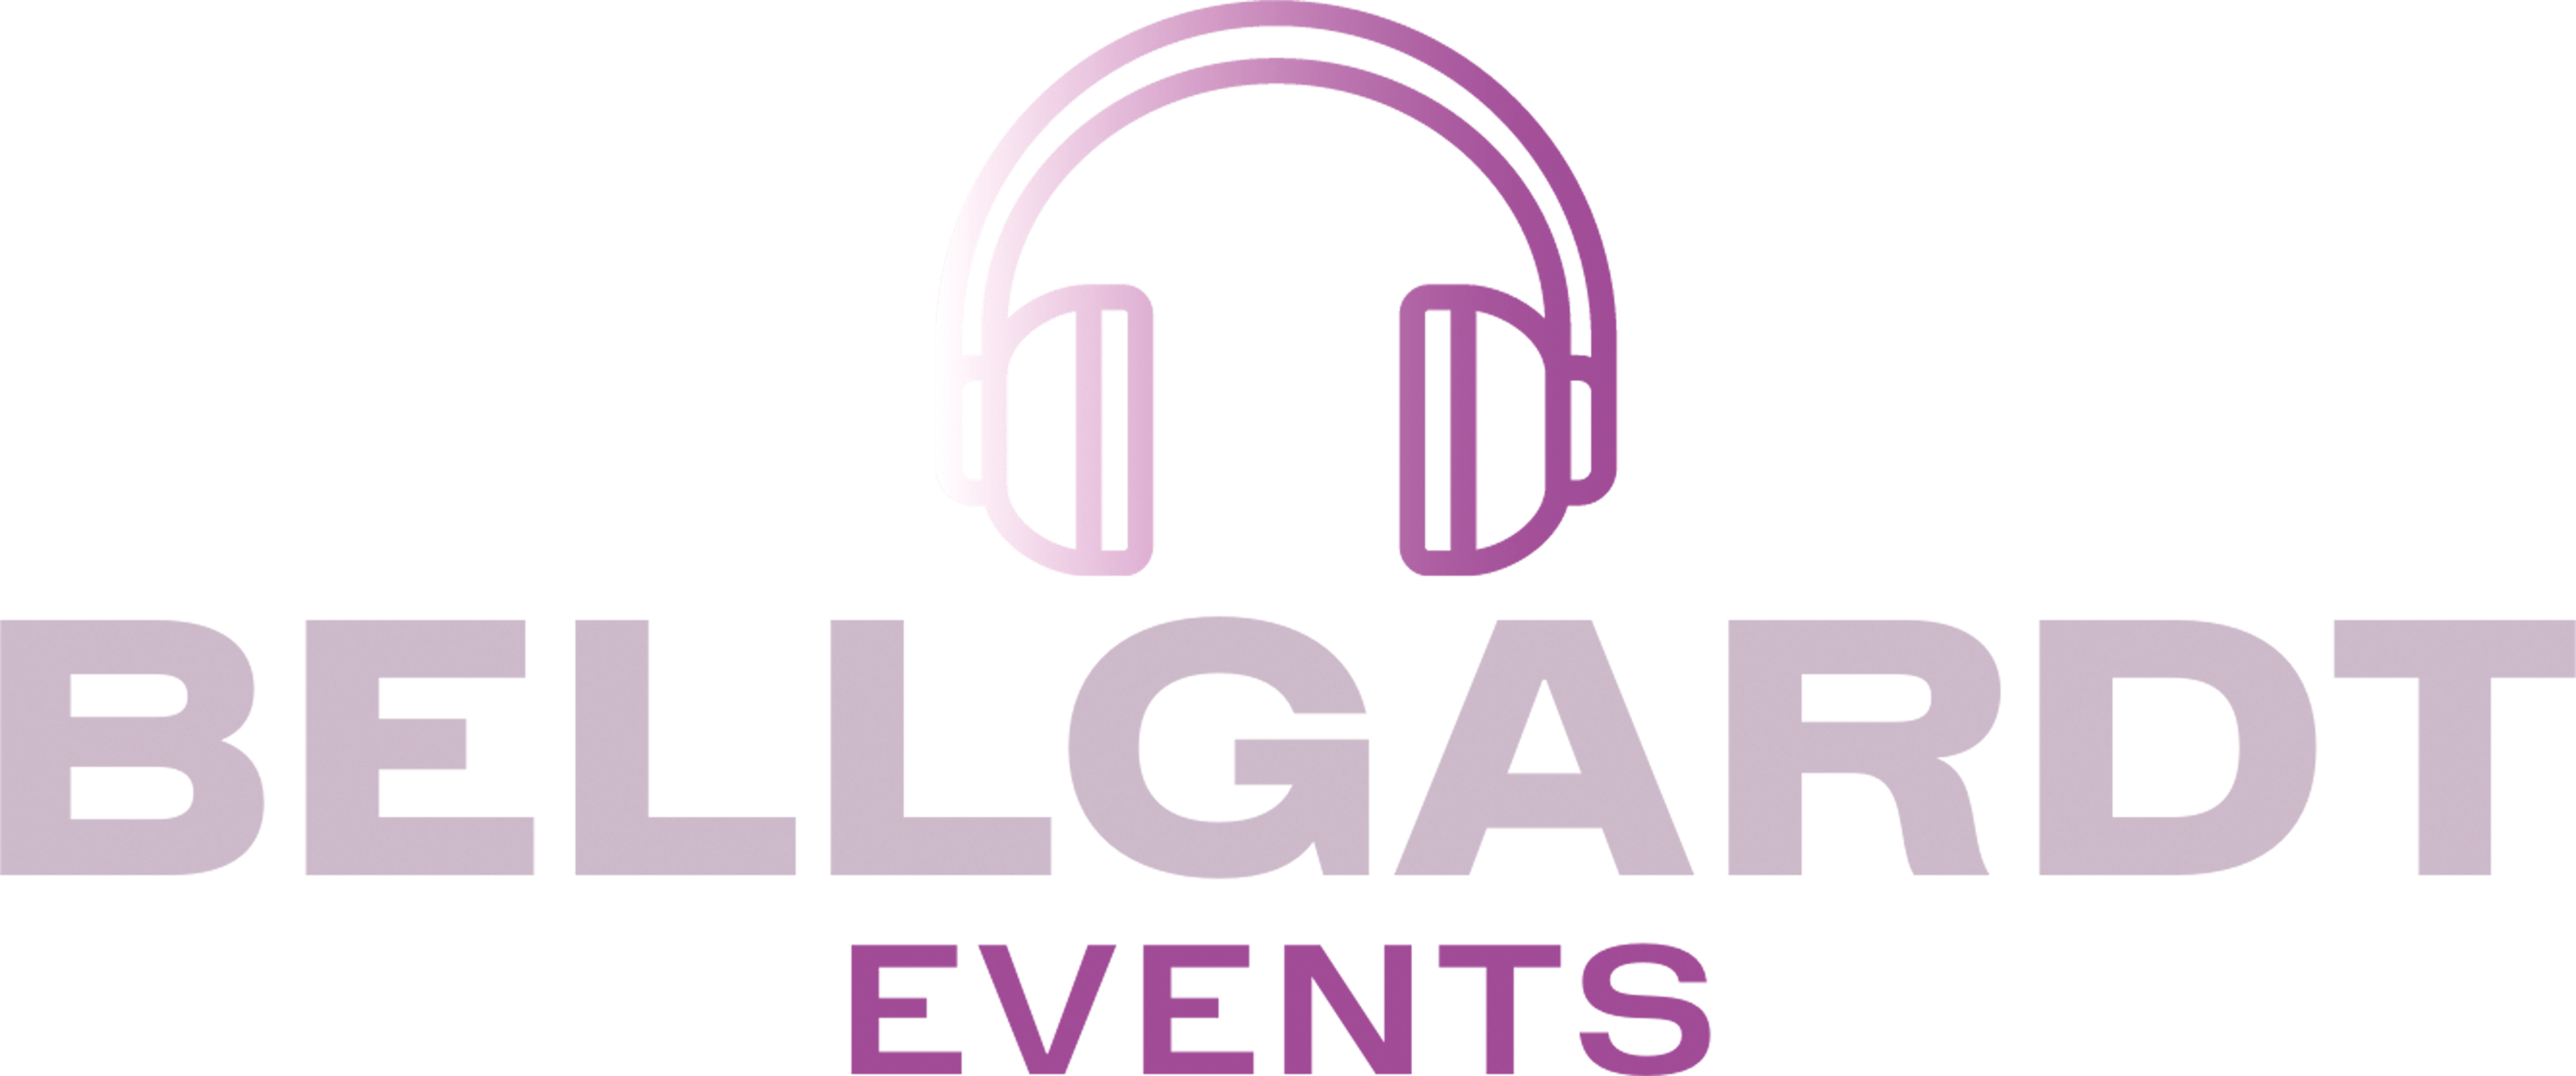 Das Logo von Bellgardt Events